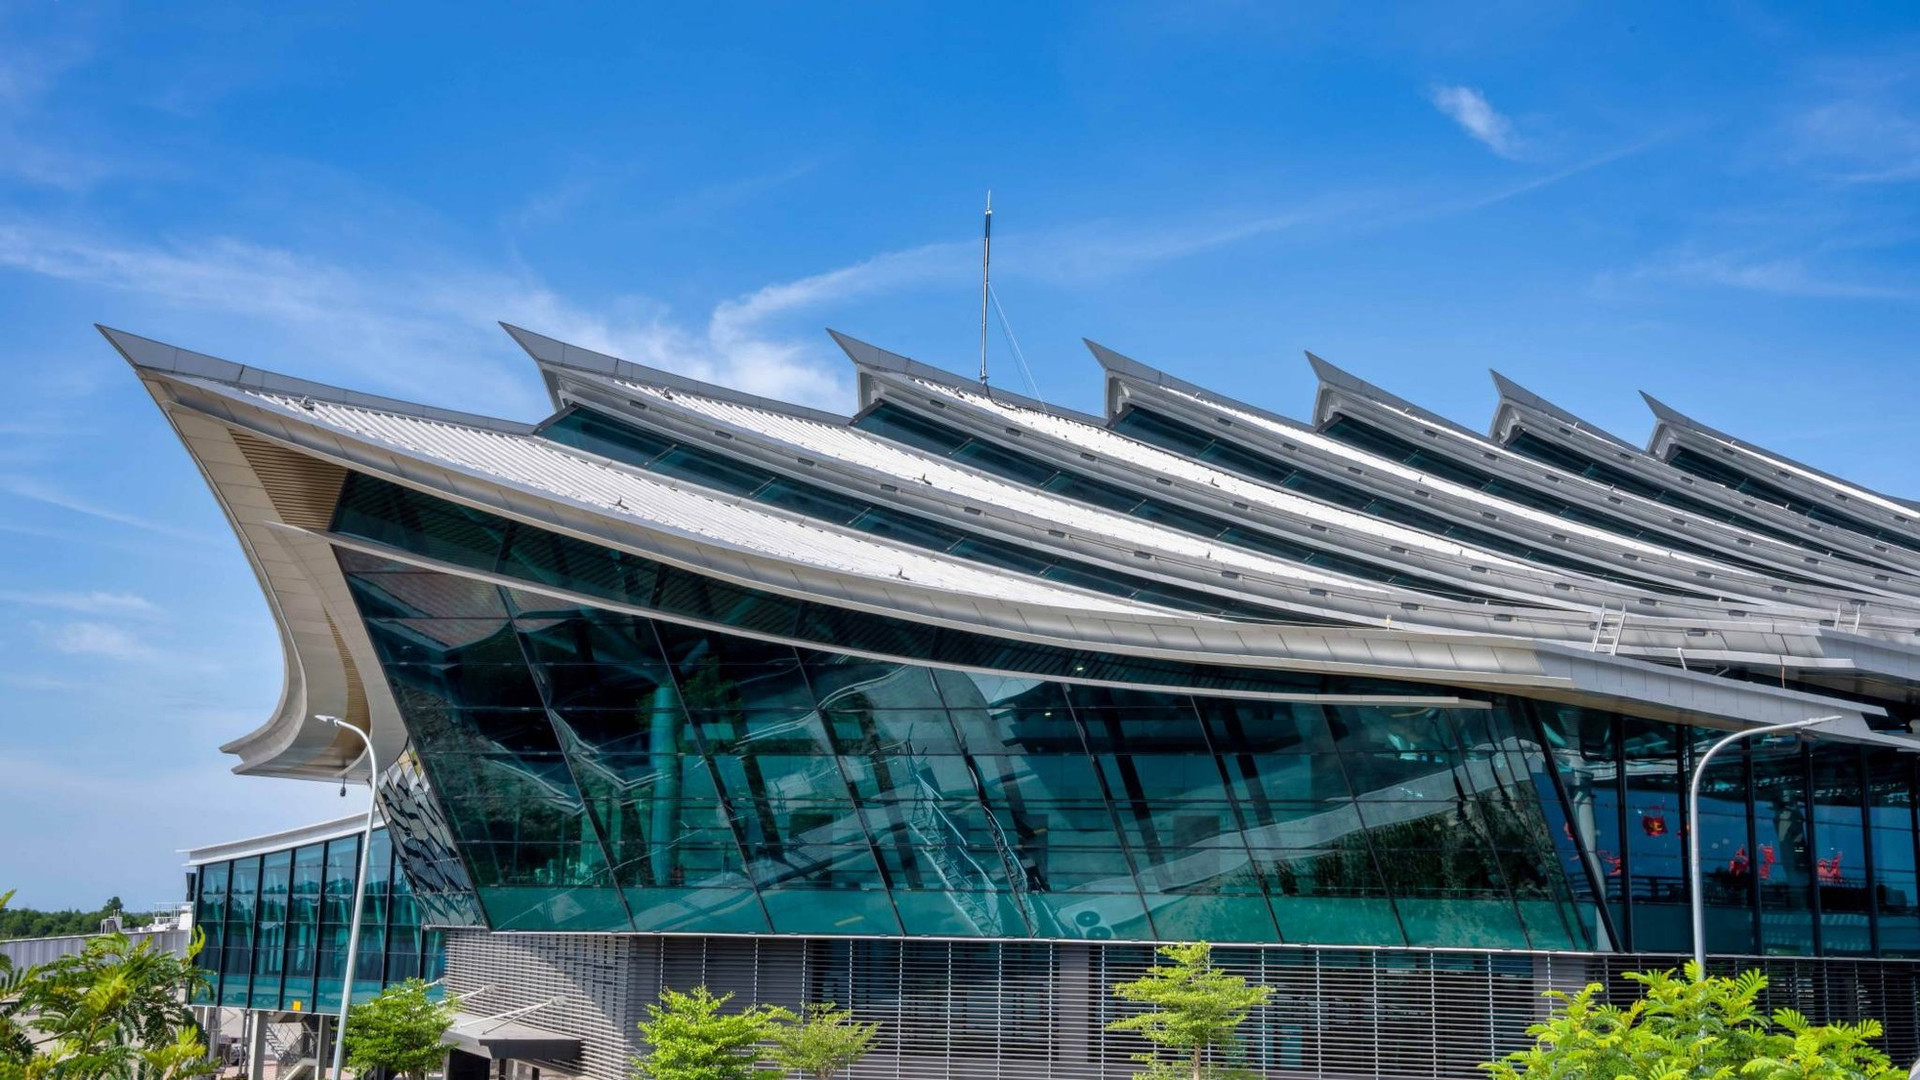 Ấn tượng hình ảnh kiến trúc sân bay 'độc nhất vô nhị' ở Việt Nam ảnh 5